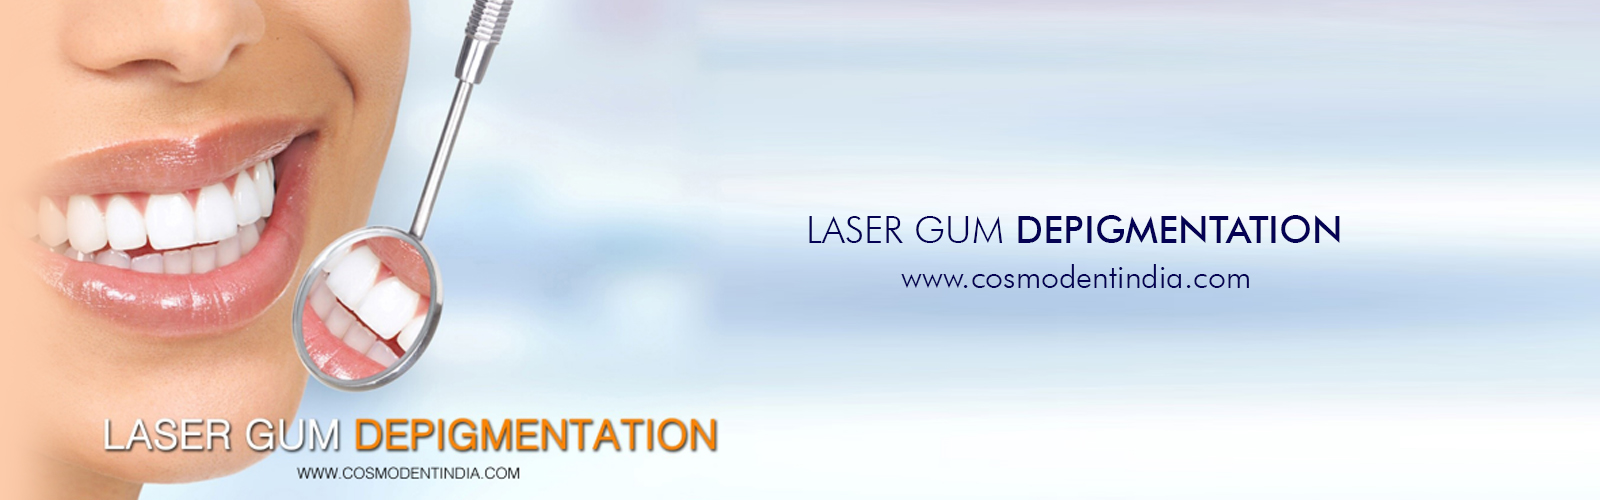 depigmentacion de goma-laser